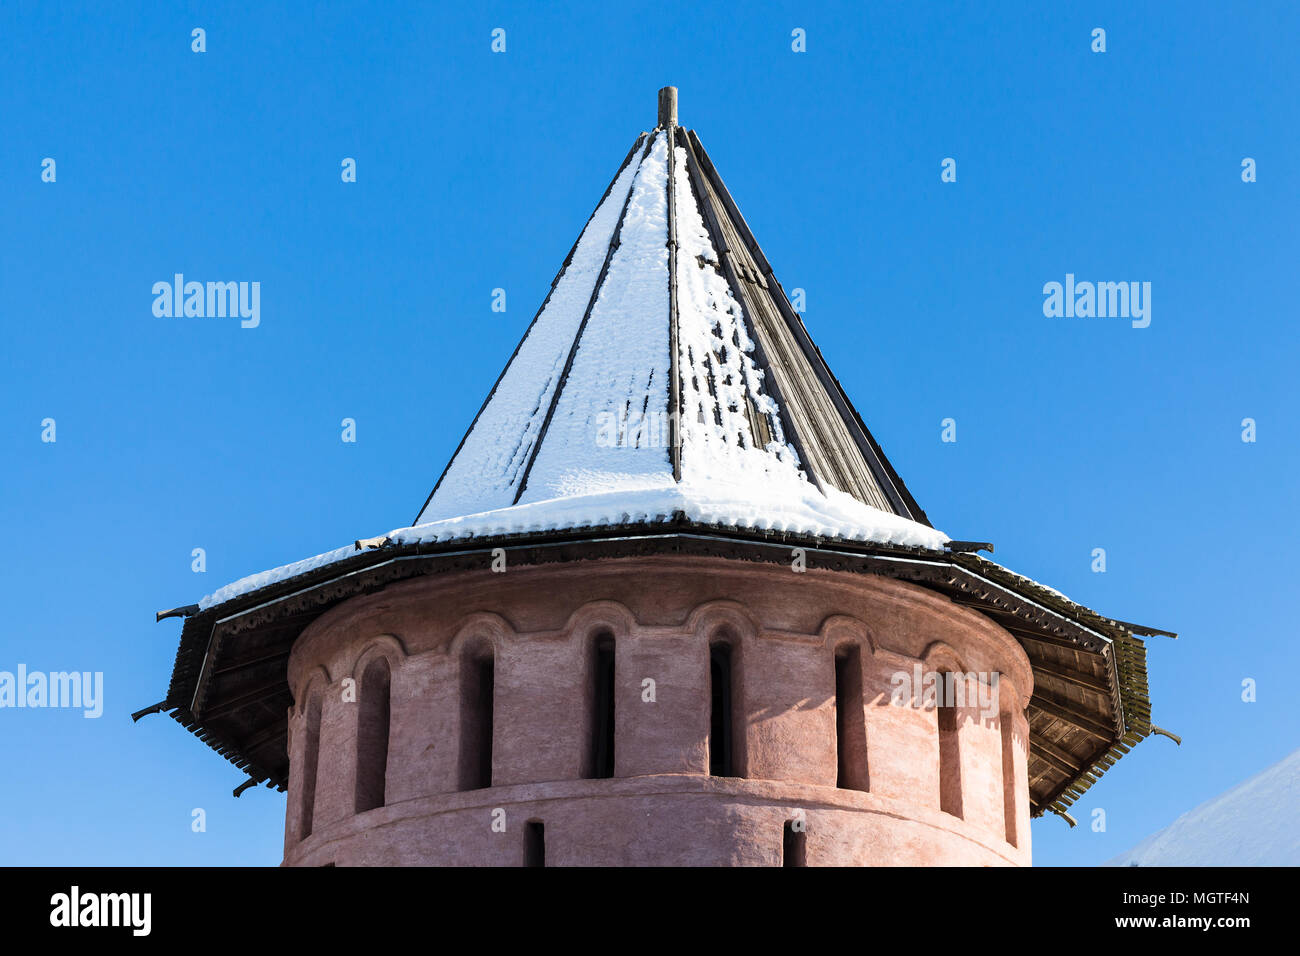 La tour de pierre du mur extérieur du monastère de Notre Sauveur et Saint Euthymius à Suzdal ville en hiver dans l'oblast de Vladimir de Russie Banque D'Images